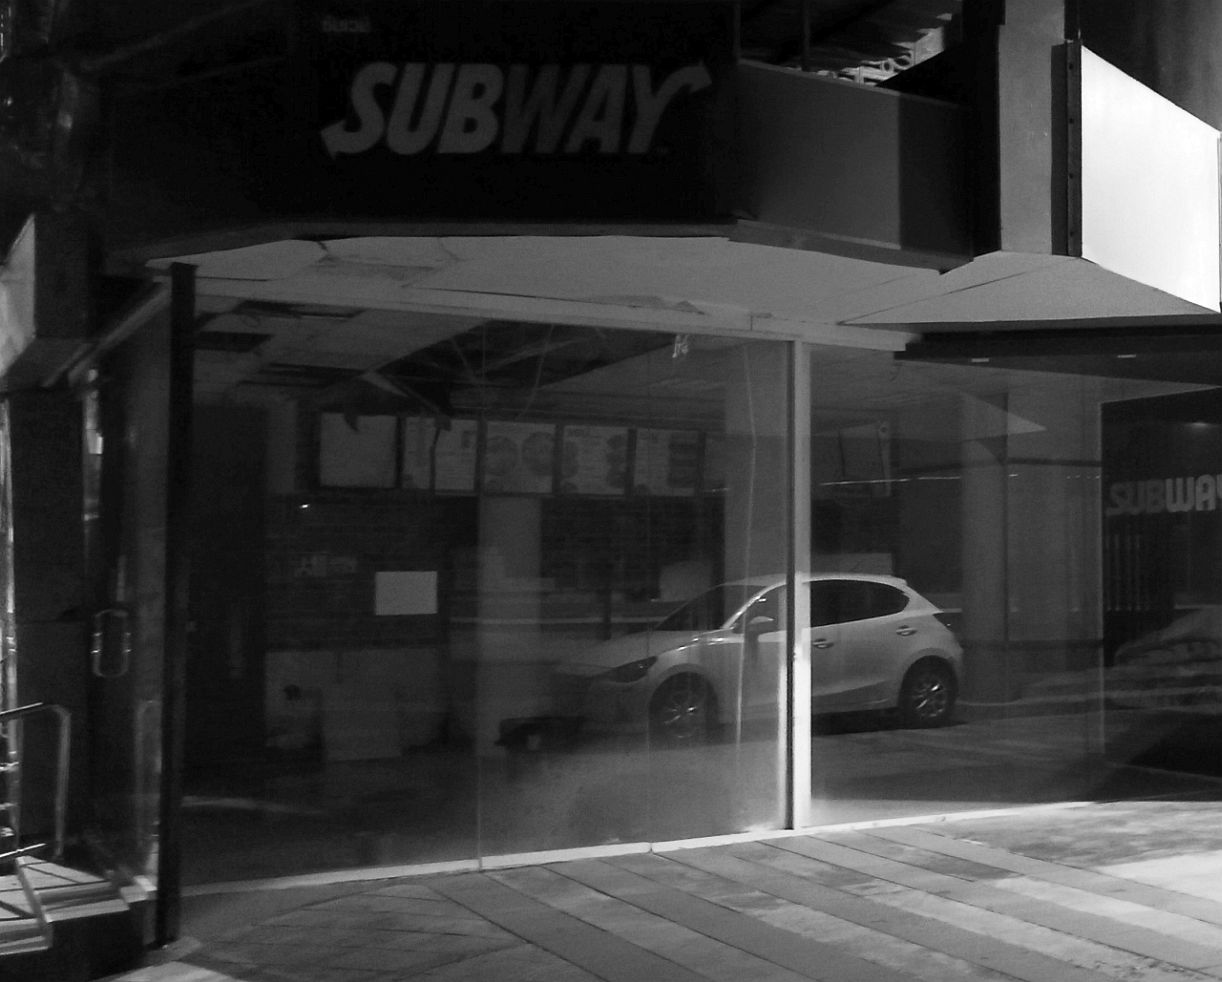 subway.jpg